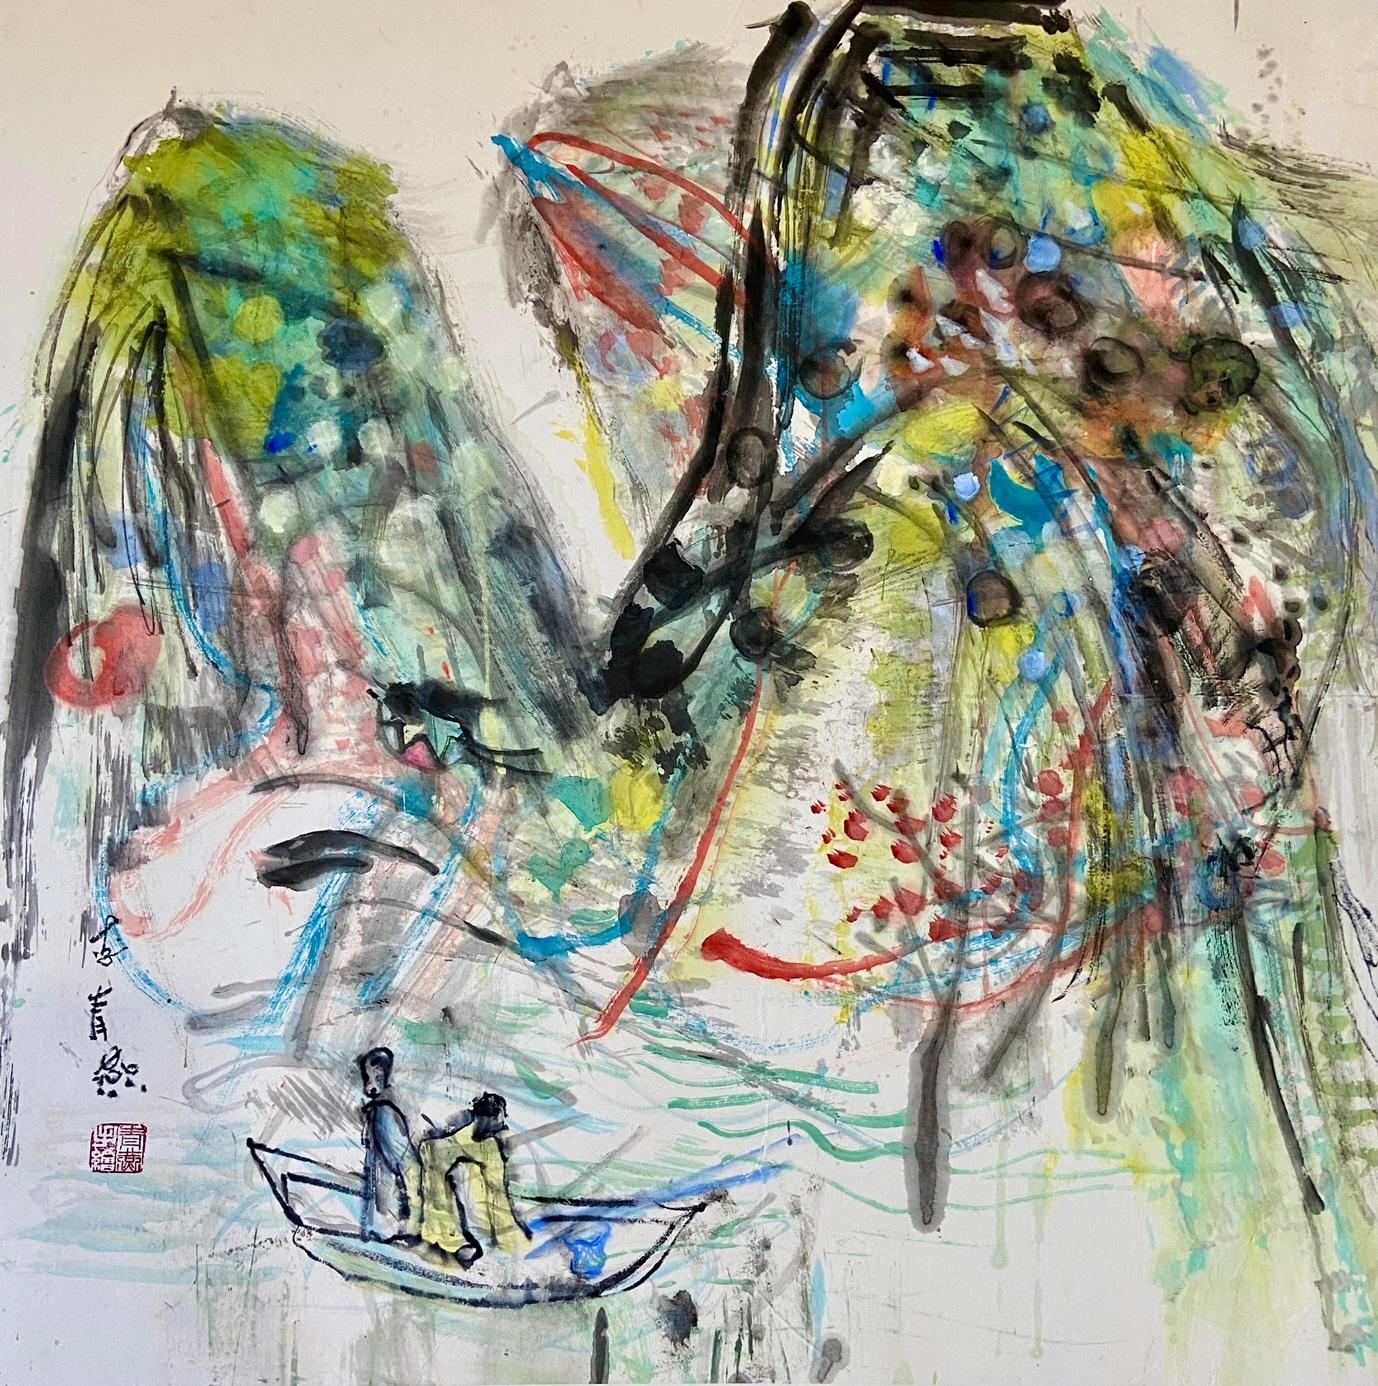 Encre et aquarelle sur papier de riz , Encadré 80 x 80 x 5 cm

Li Qingyan est une artiste chinoise née en 1972 qui vit et travaille à Pékin, en Chine. Qingyan est peintre de profession. Elle est membre de la China Contemporary Women's Painting